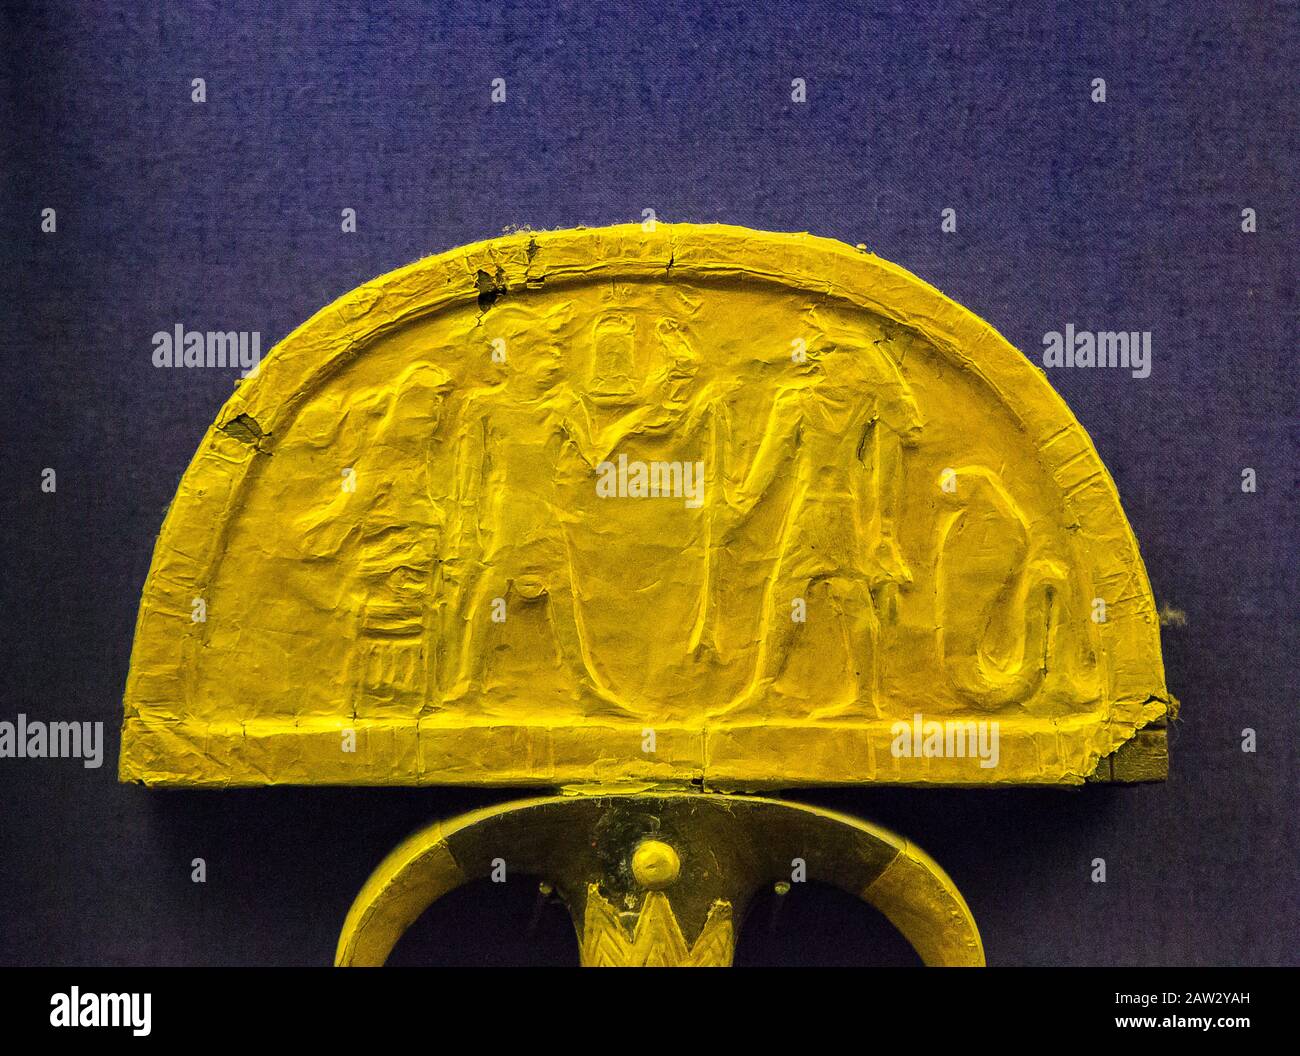 Egitto, Cairo, Museo Egizio, un ventilatore dorato di foglio trovato nella tomba della regina Ahhotep, la madre di Ahmosi, Dra Abu el Naga, Luxor. Foto Stock